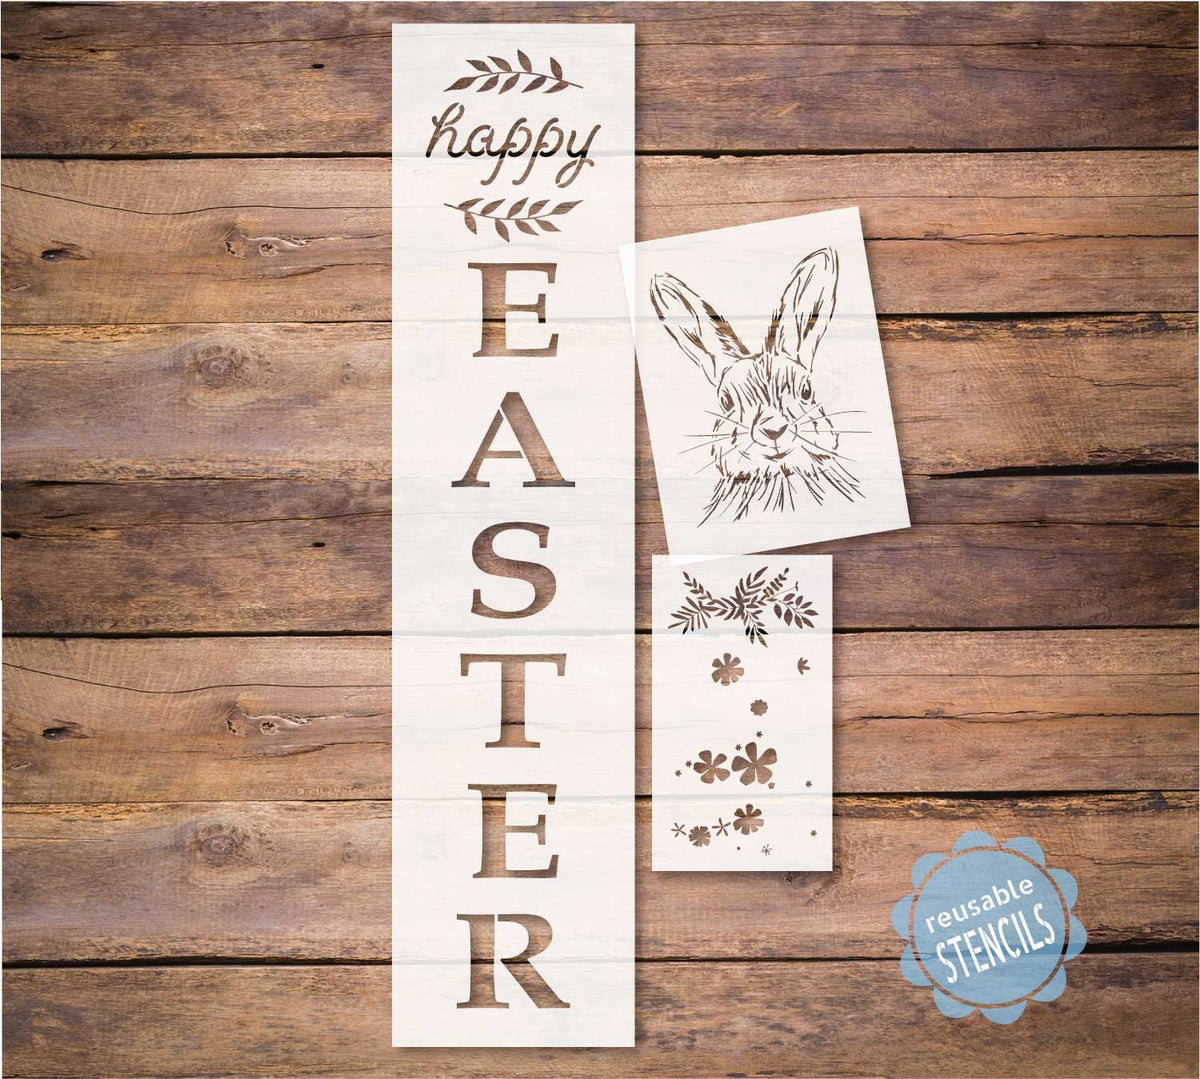 Happy Easter Porch Stencil / Rabbit stencil